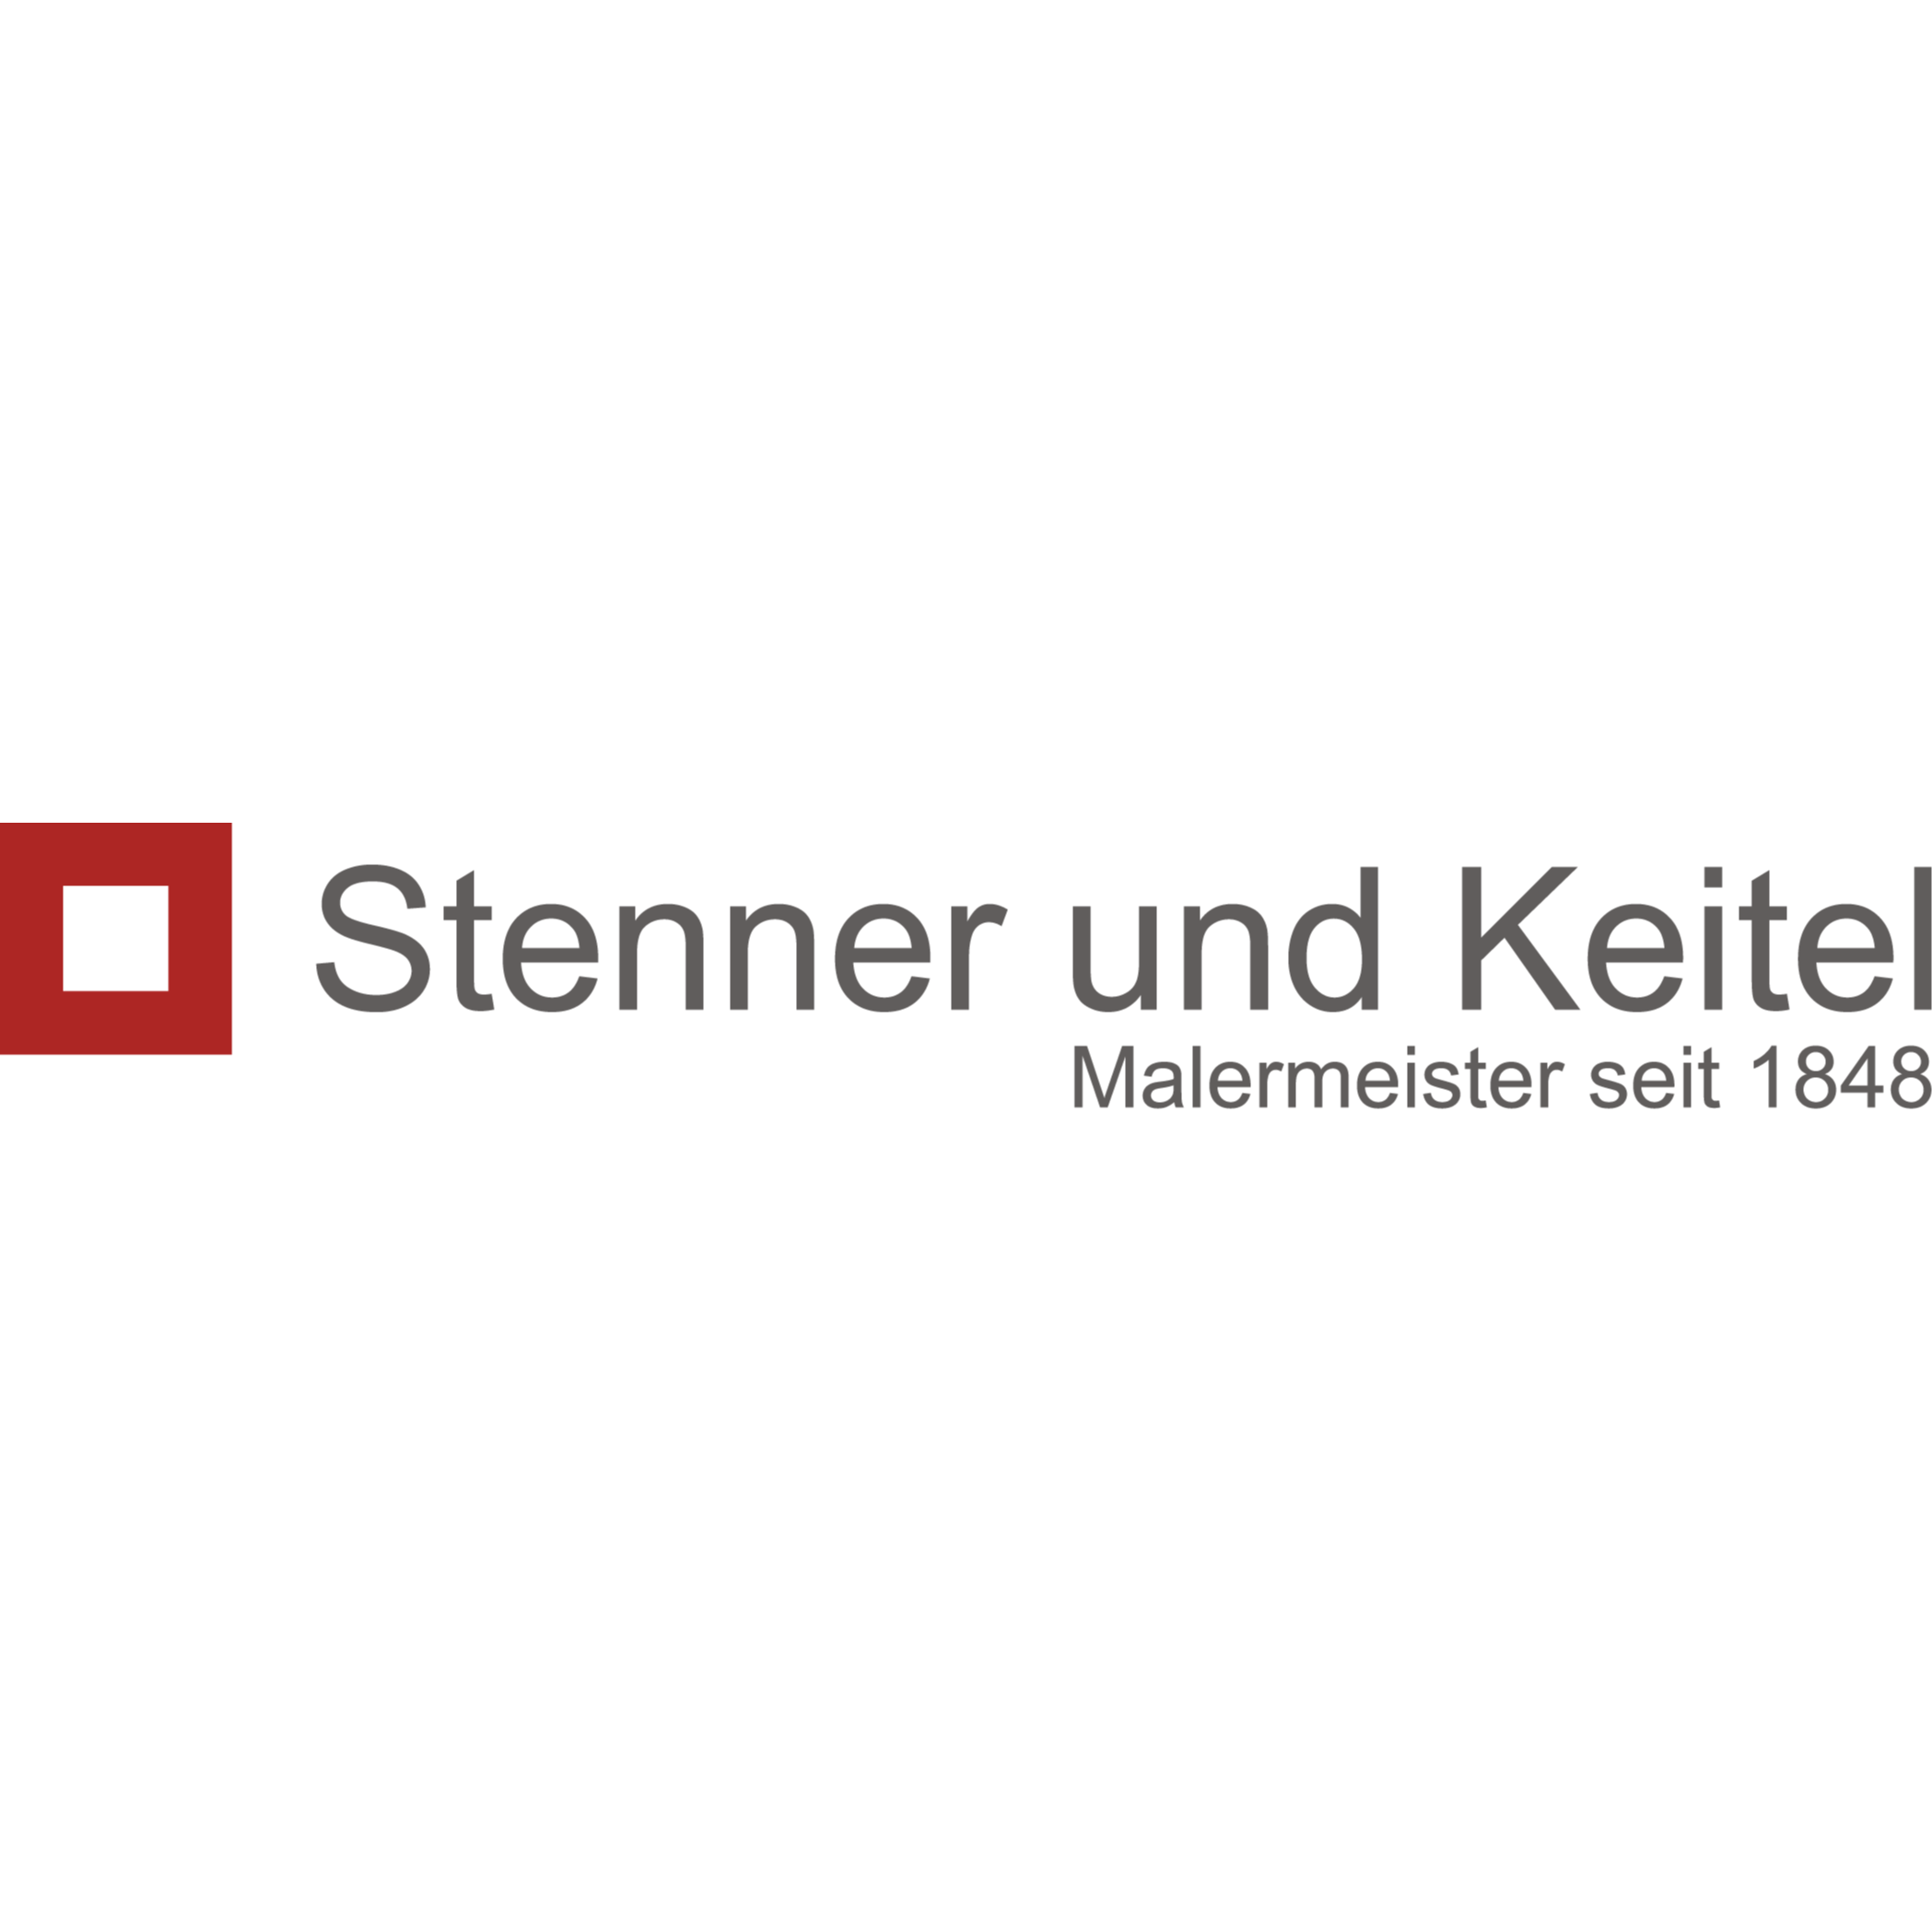 Stenner und Keitel GmbH & Co. KG  